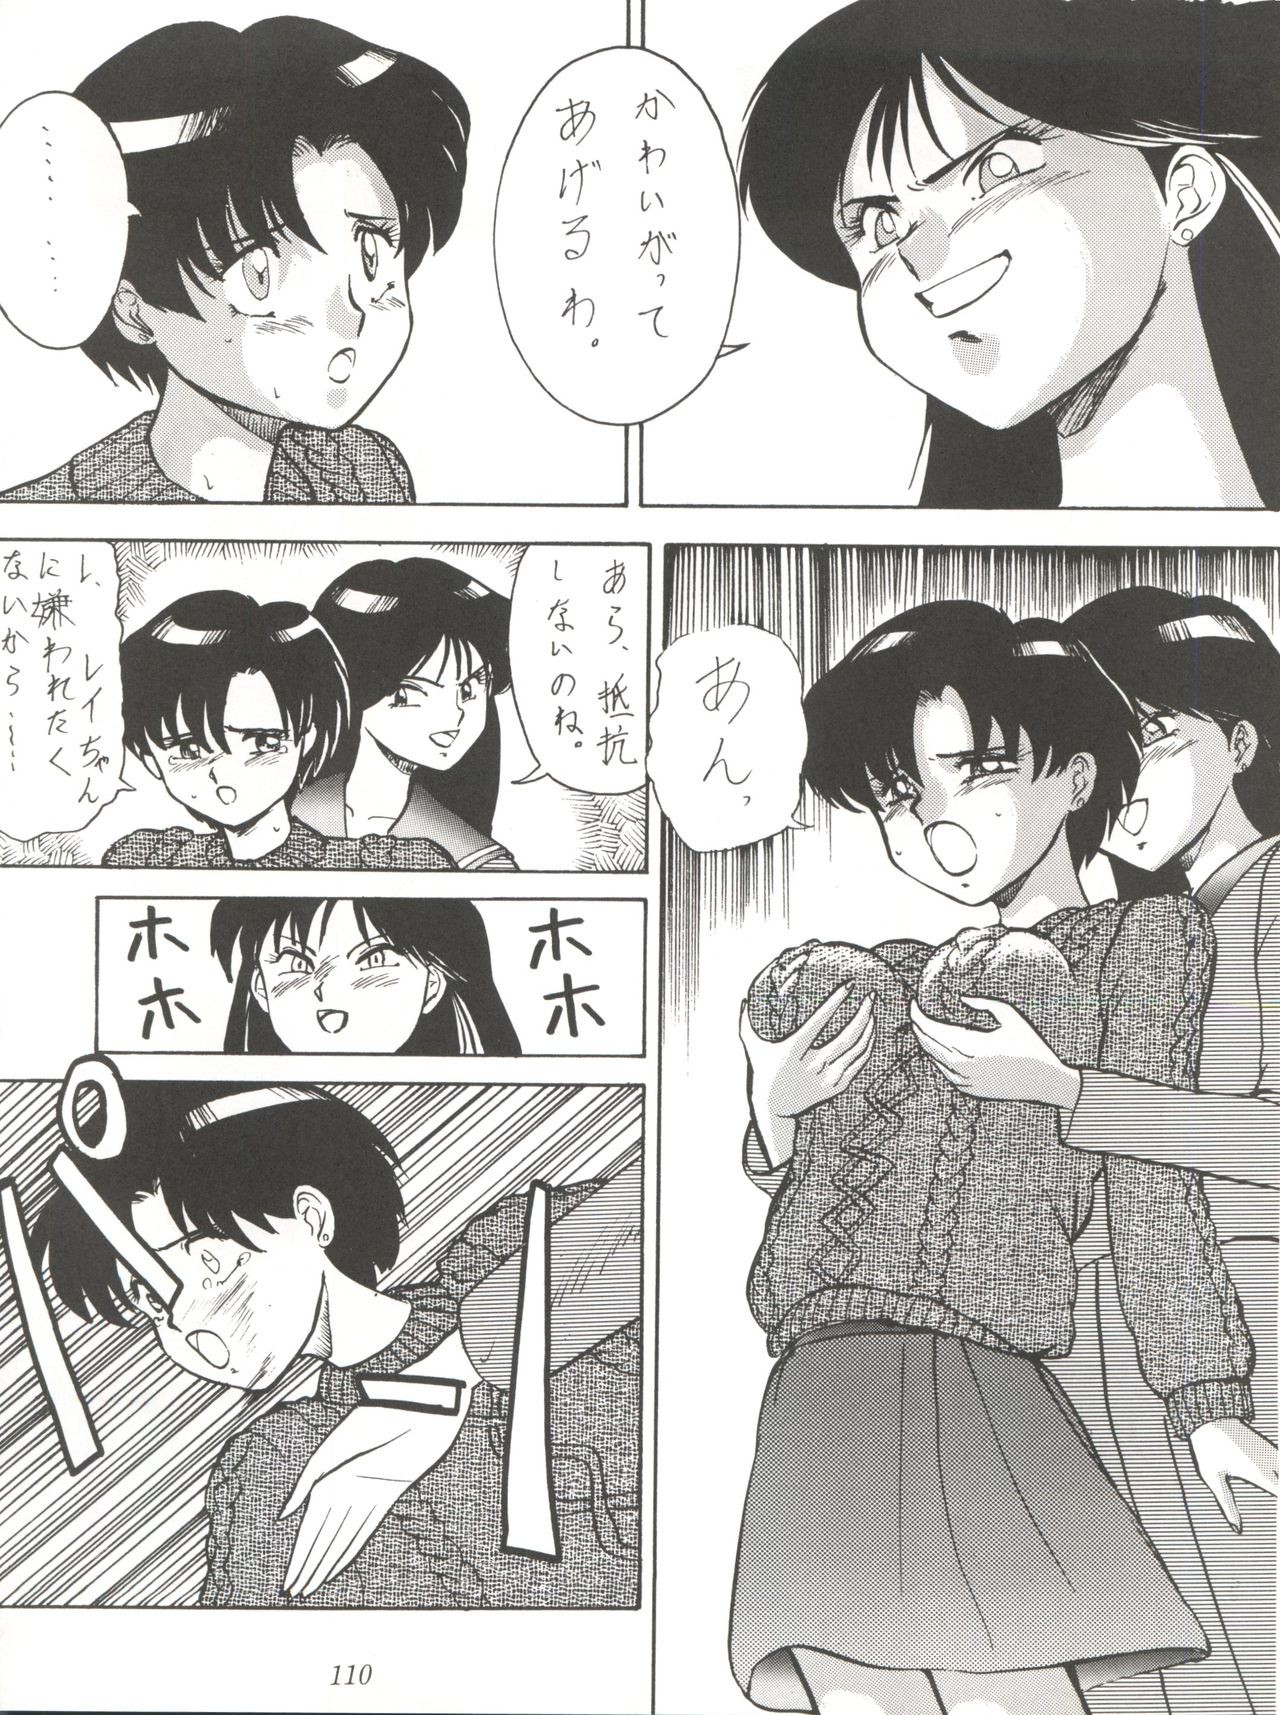 Yuuki and Yume and Mukubo's Japanese hentai manga picture 77